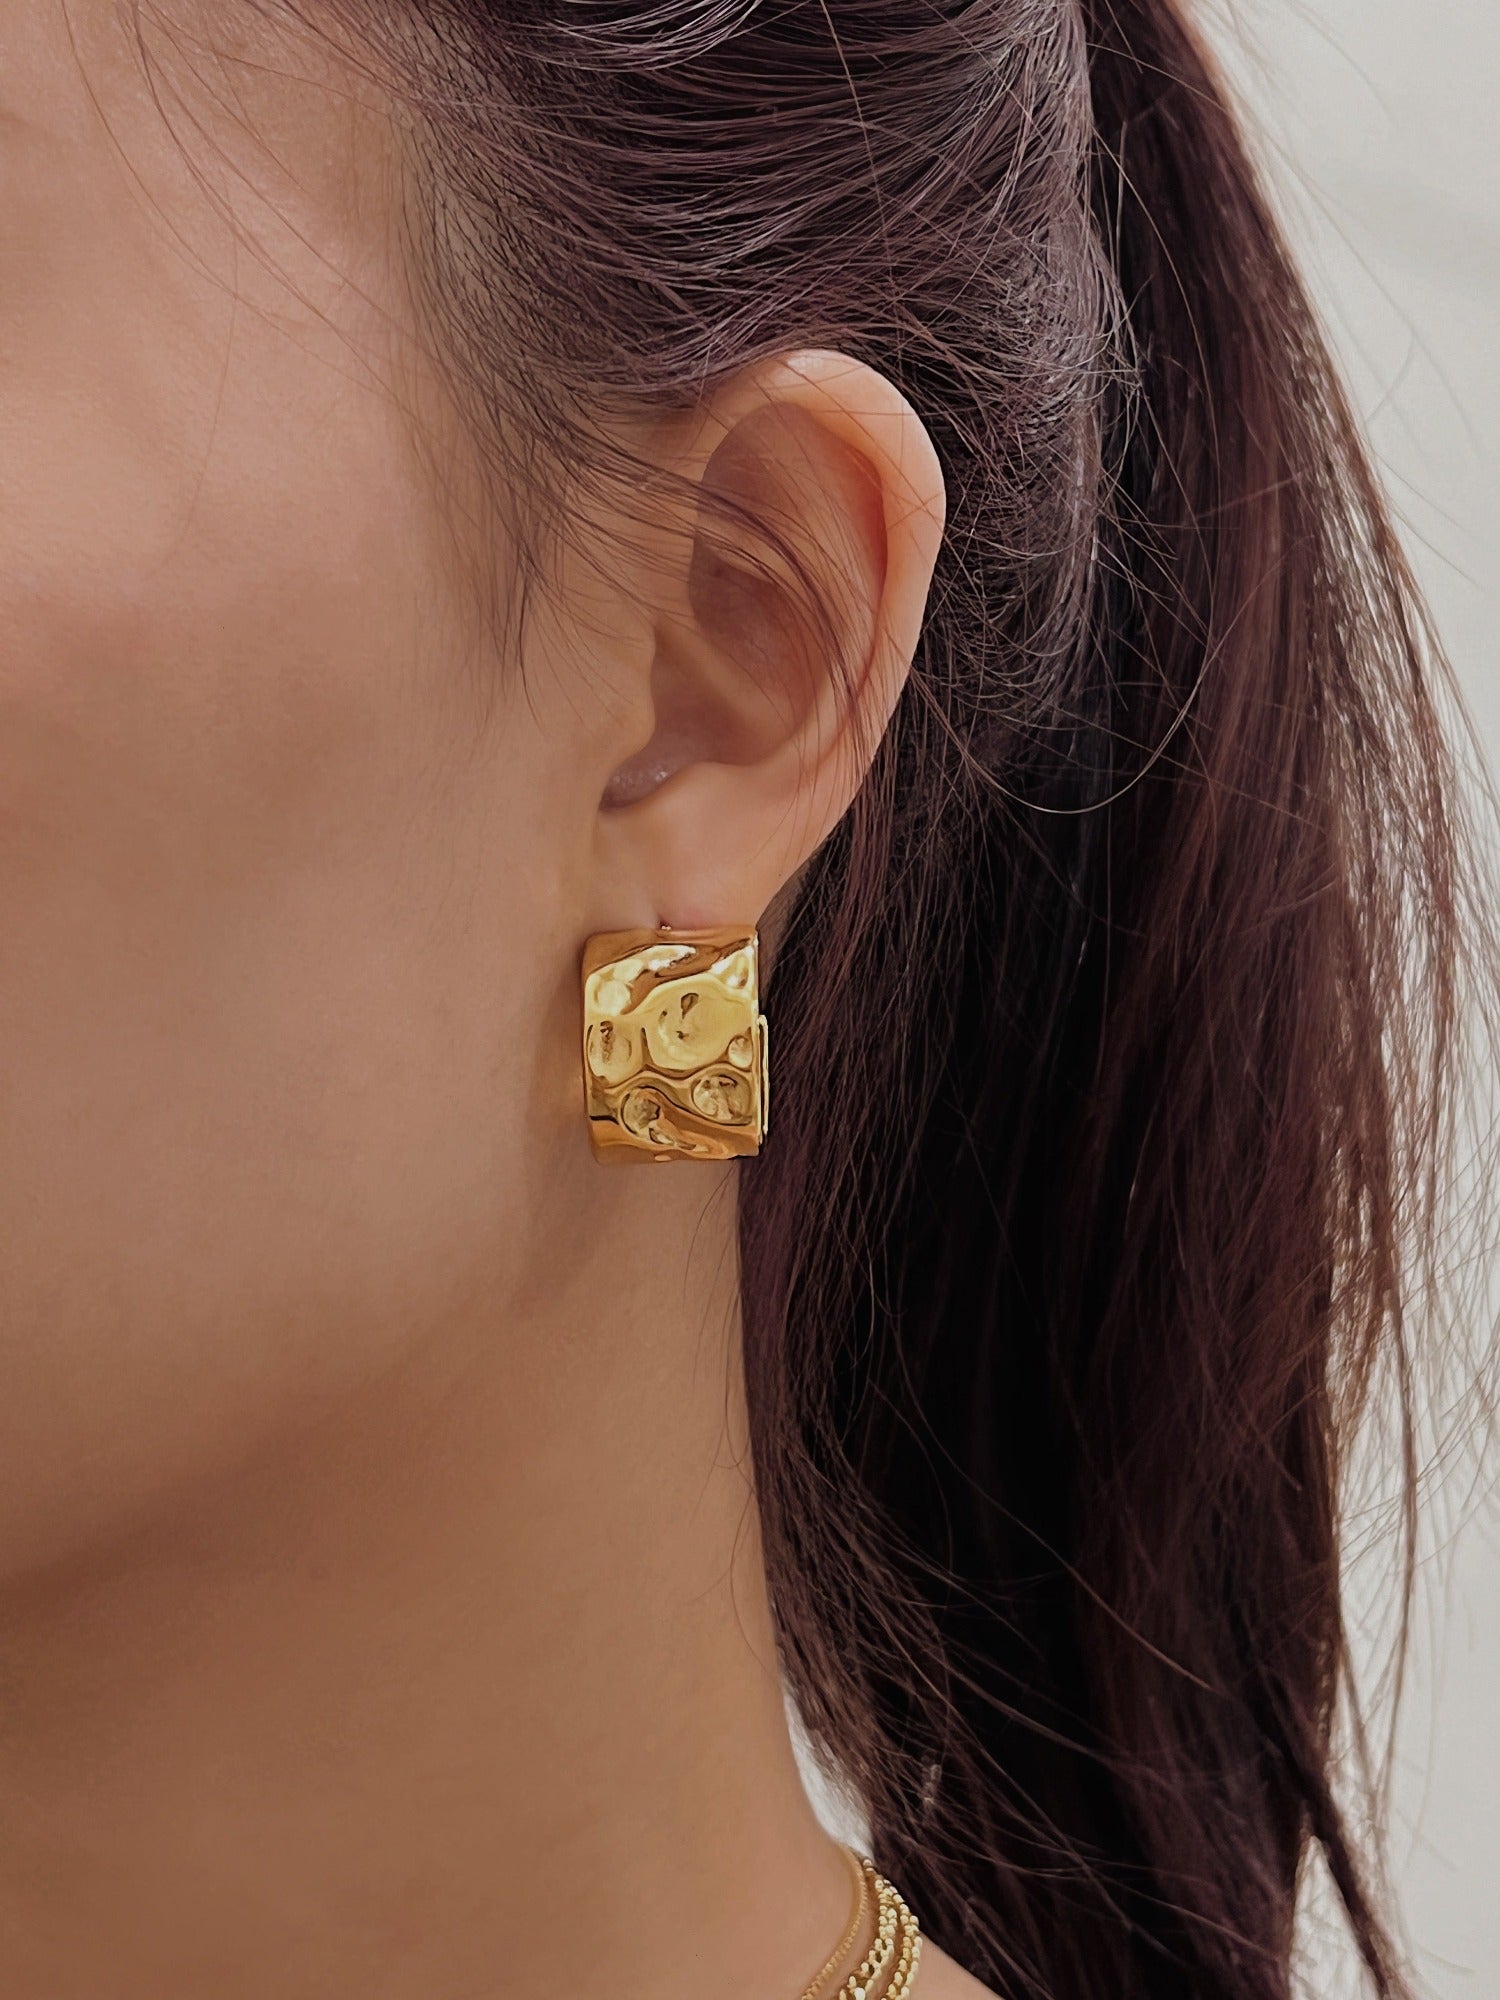 Gold C Hoop Earrings, Statement Wide Hoop Earrings, Moon Surface Textured Hoop Earrings, Irregular Gold Hoops, Chunky Ridge Hoop Earrings